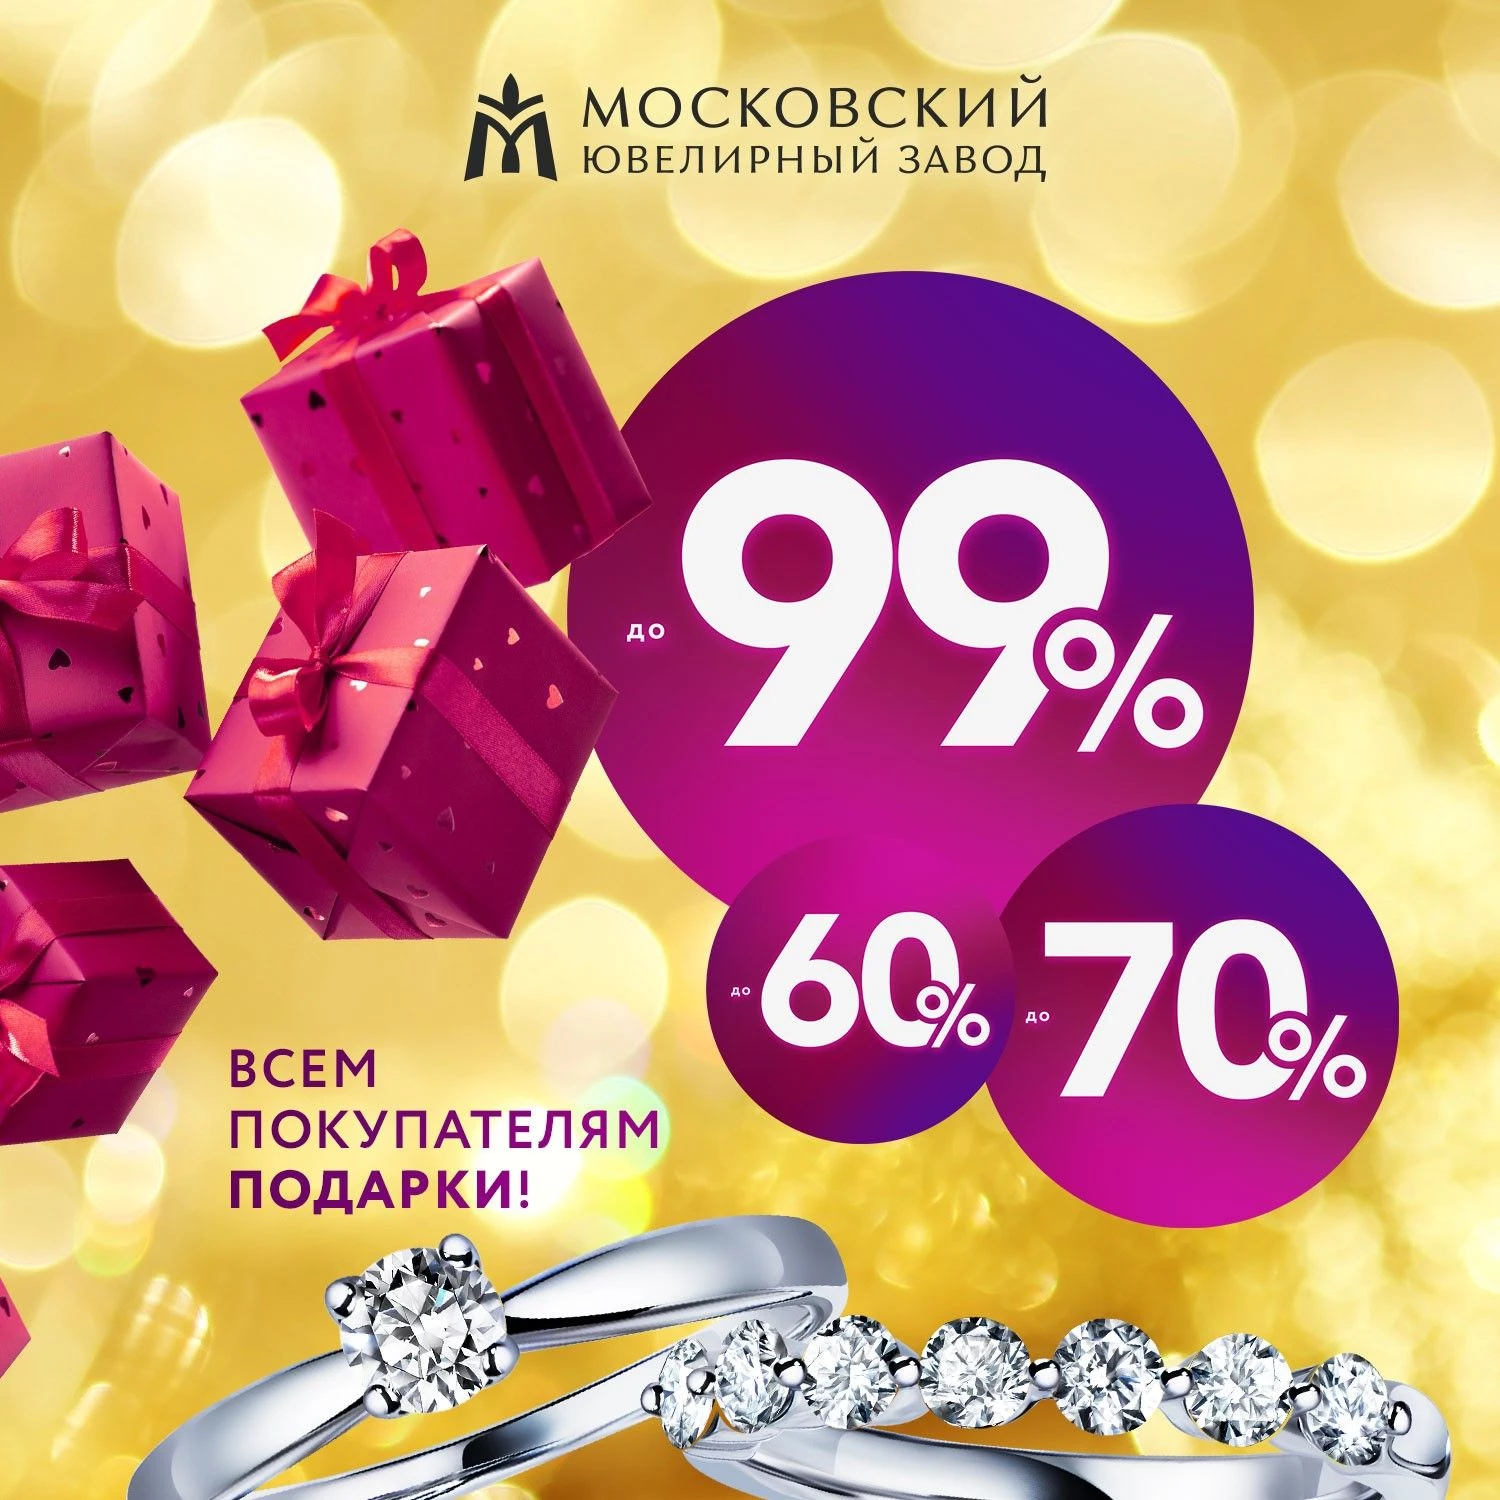 Новогодняя распродажа в Московском ювелирном заводе